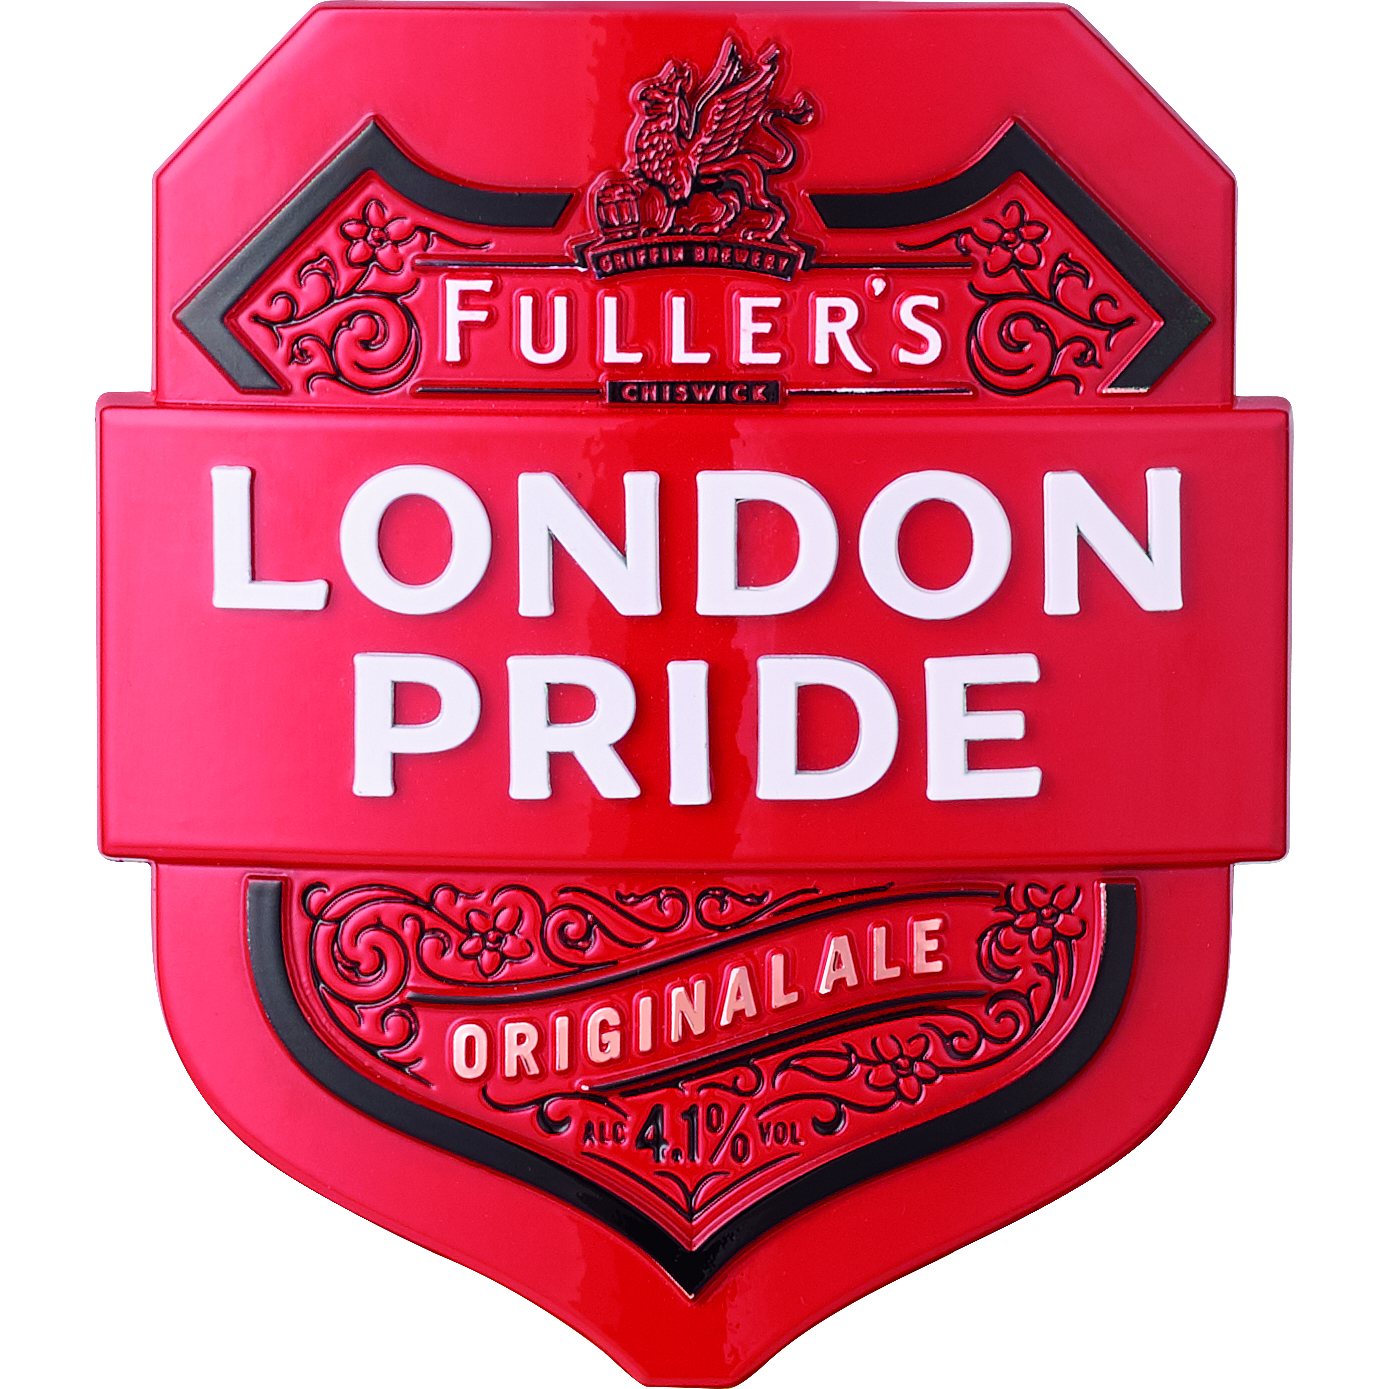 Fullers London Pride Keg